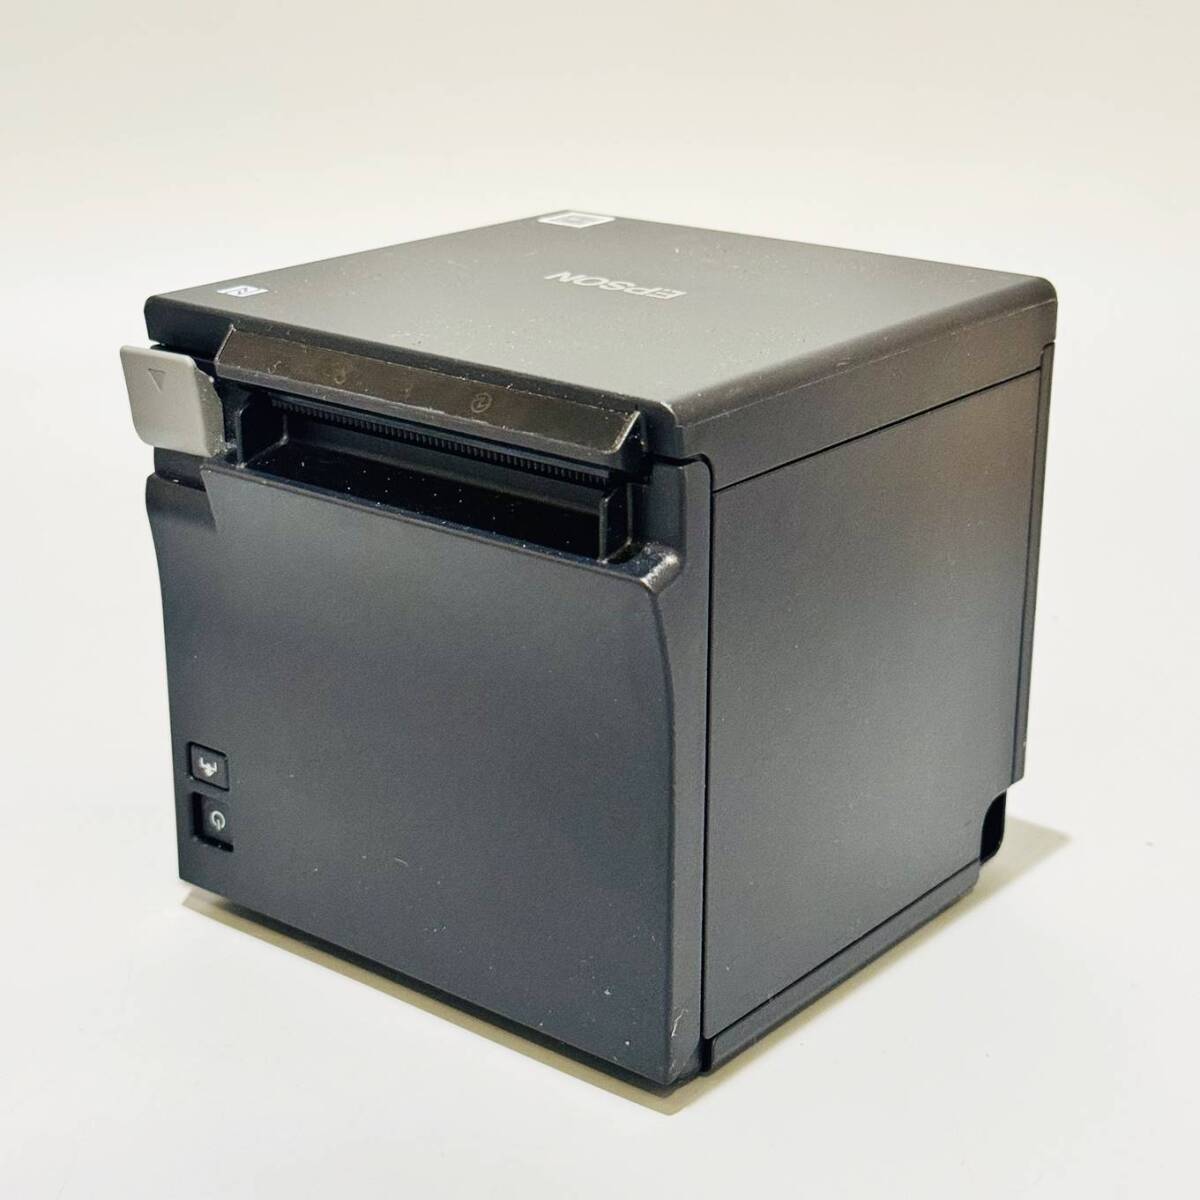 .HK10014 чистка settled рабочее состояние подтверждено 2019 год производства Epson EPSONre сиденье принтер TM-m30 источник питания адаптор M235B для бизнеса 